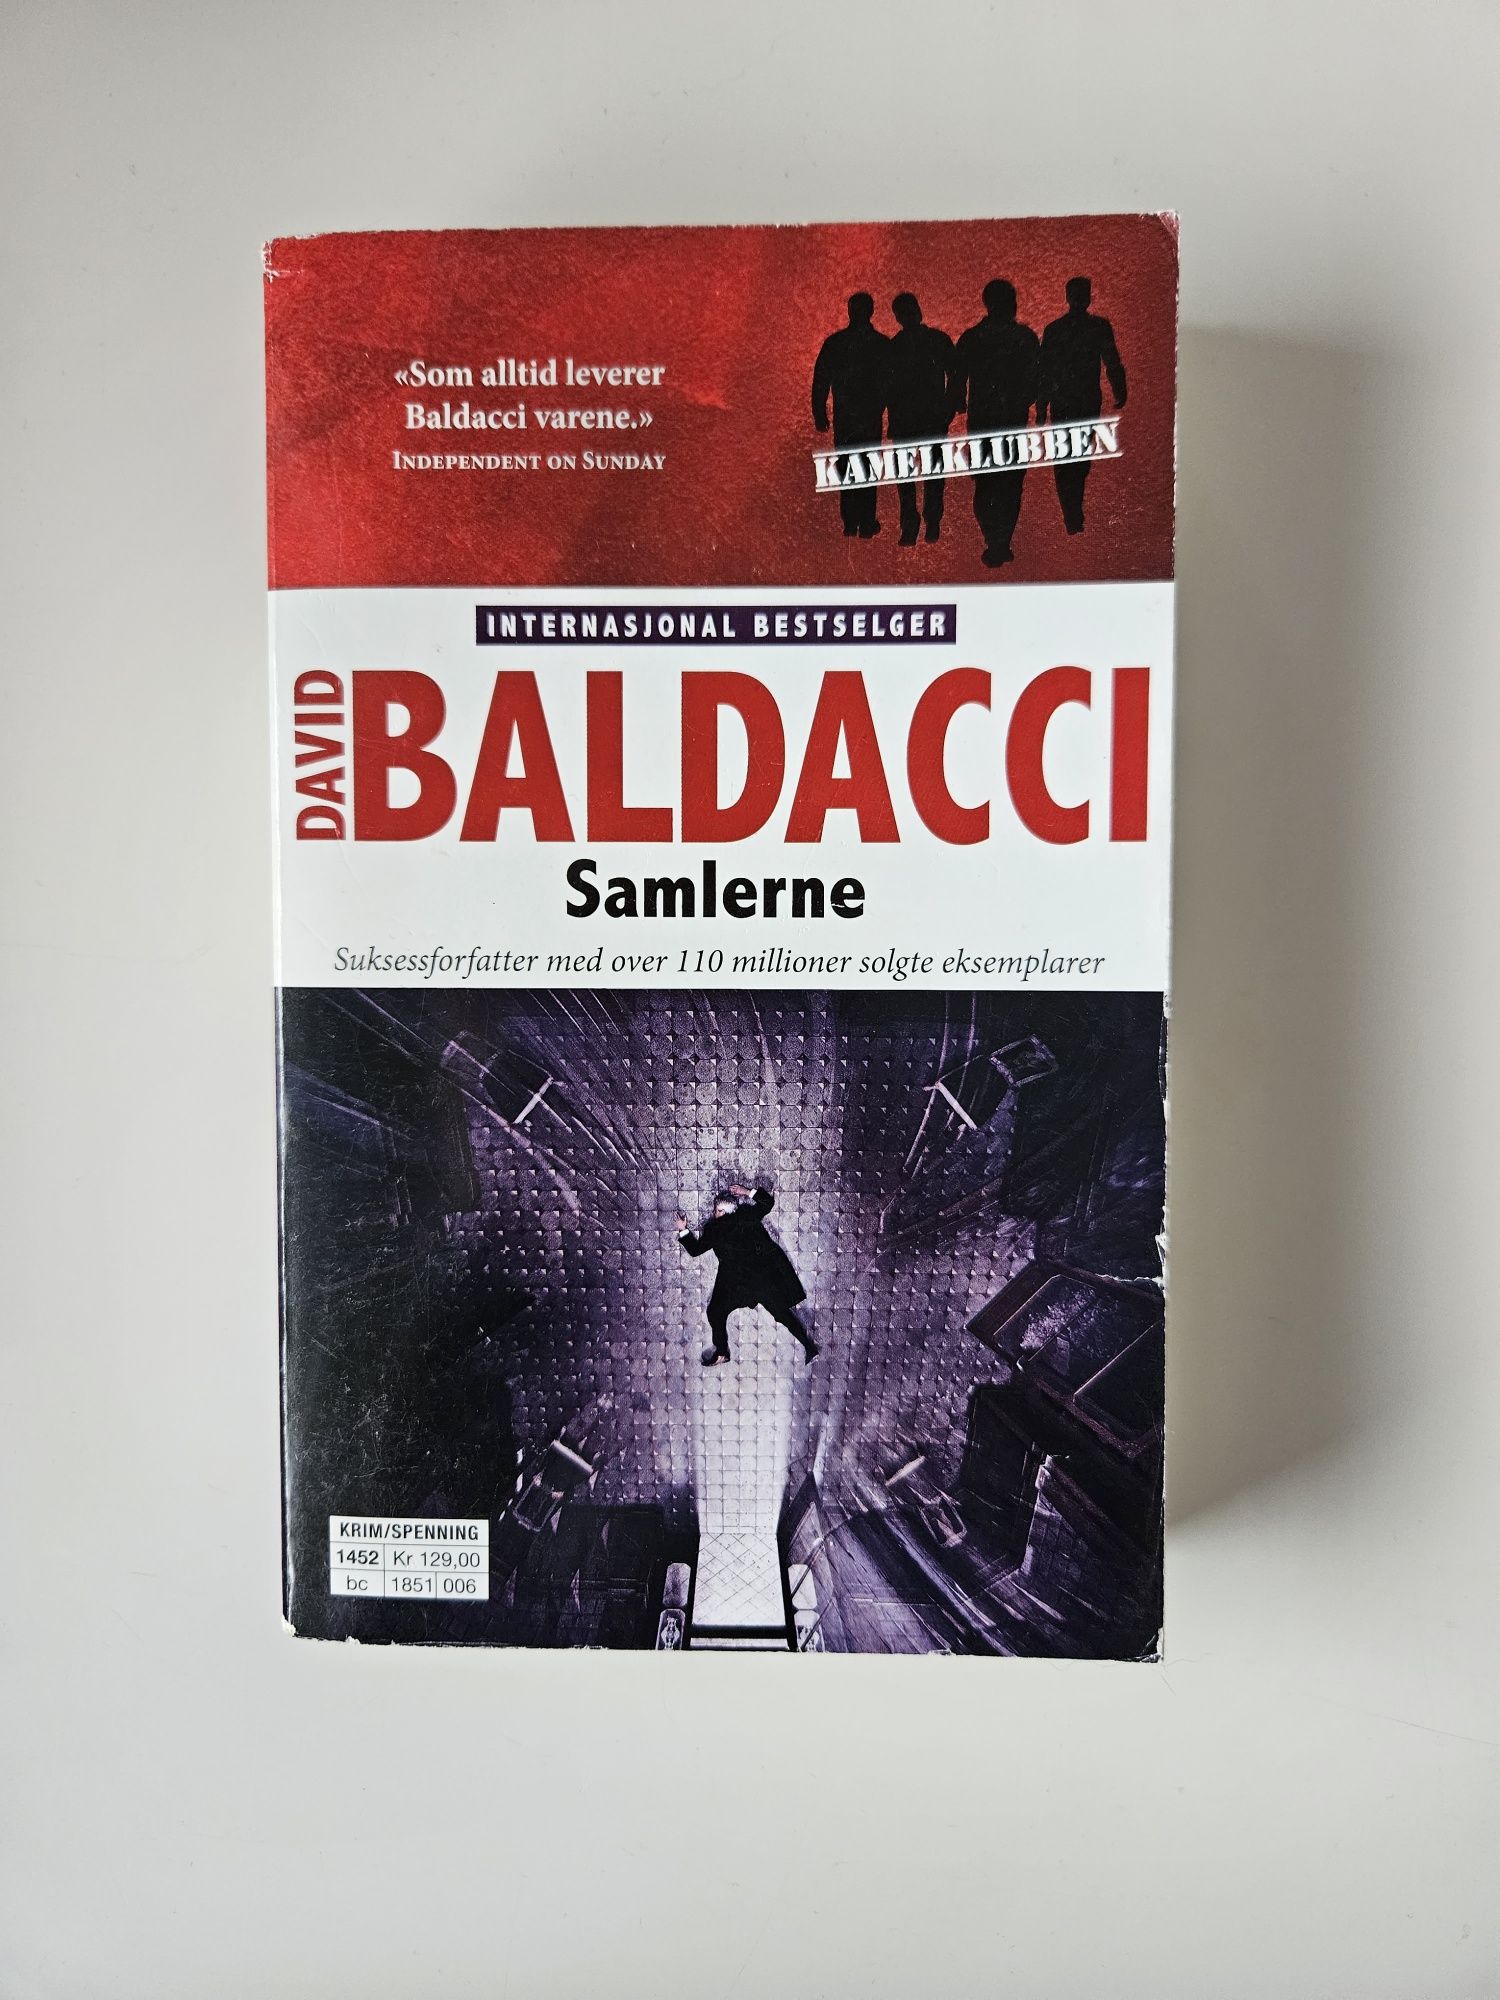 Samlerne David Baldacci